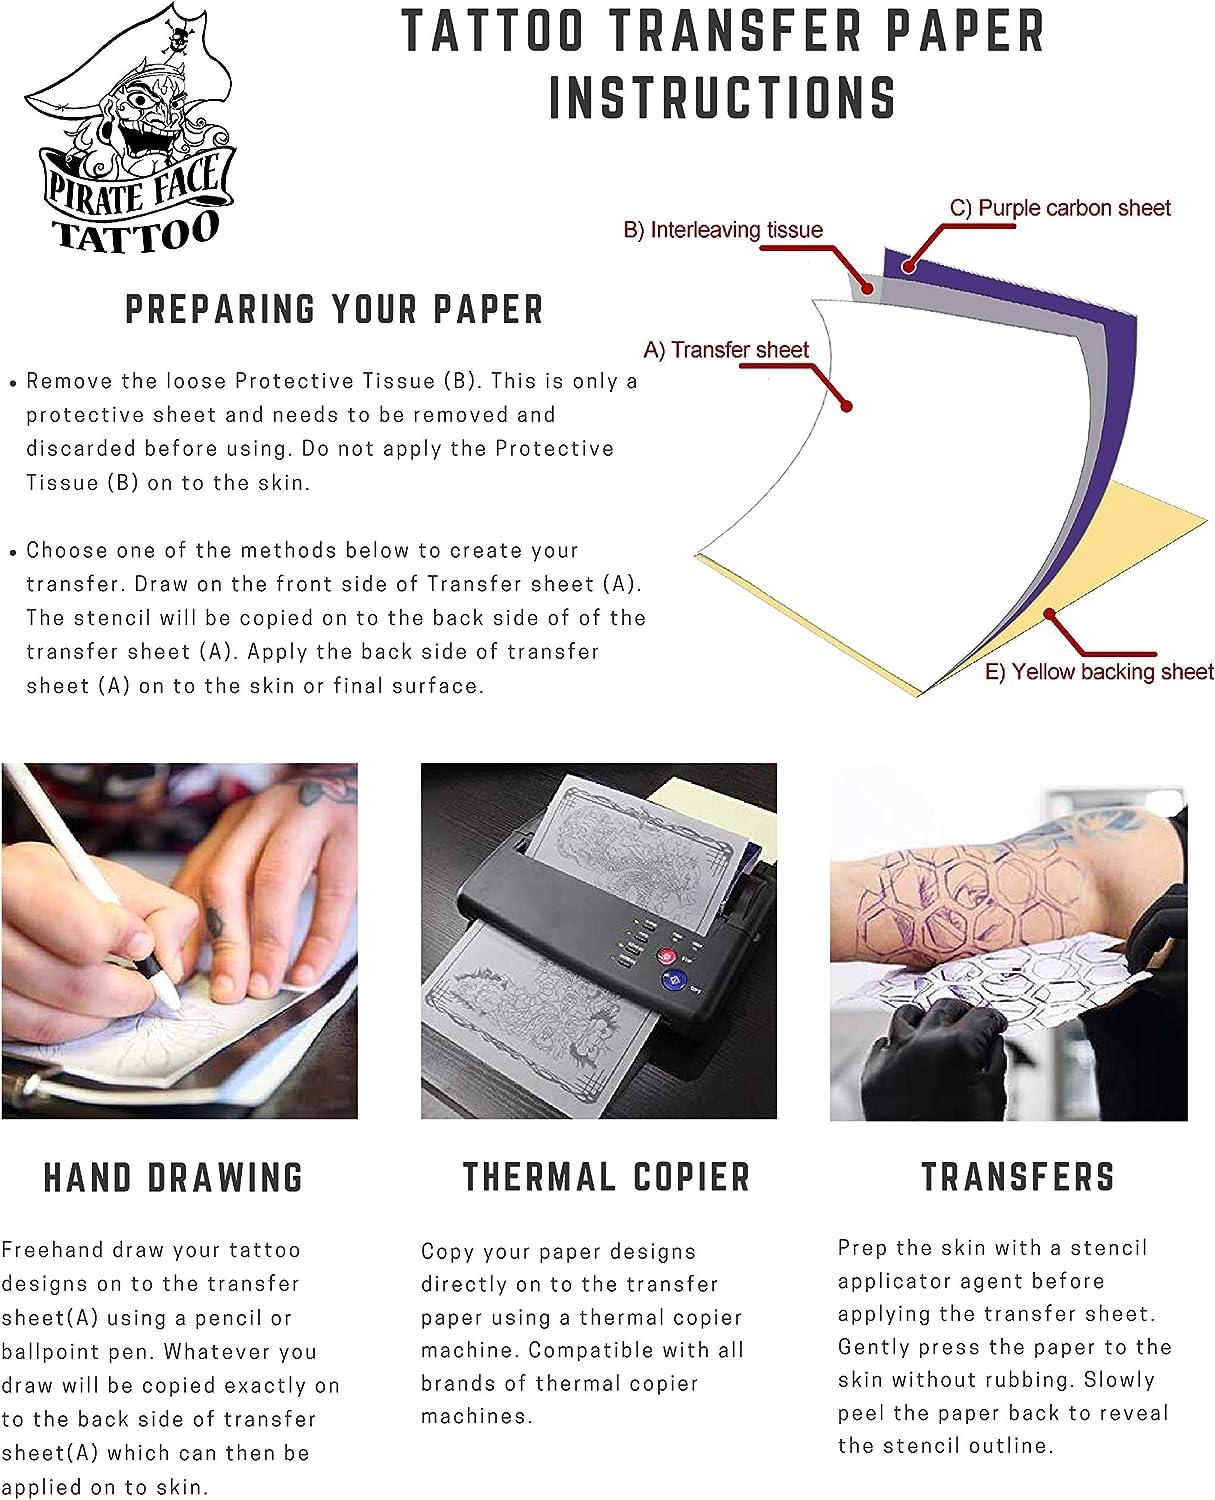  Tattoo Transfer Paper - 100 PCS Tattoo Stencil Paper, 4 Layers  8.5 x 11 A4 Size Tattoo Thermal Stencil Paper for Tattoo Transfer Kit  Tattoo Supplies : Arts, Crafts & Sewing